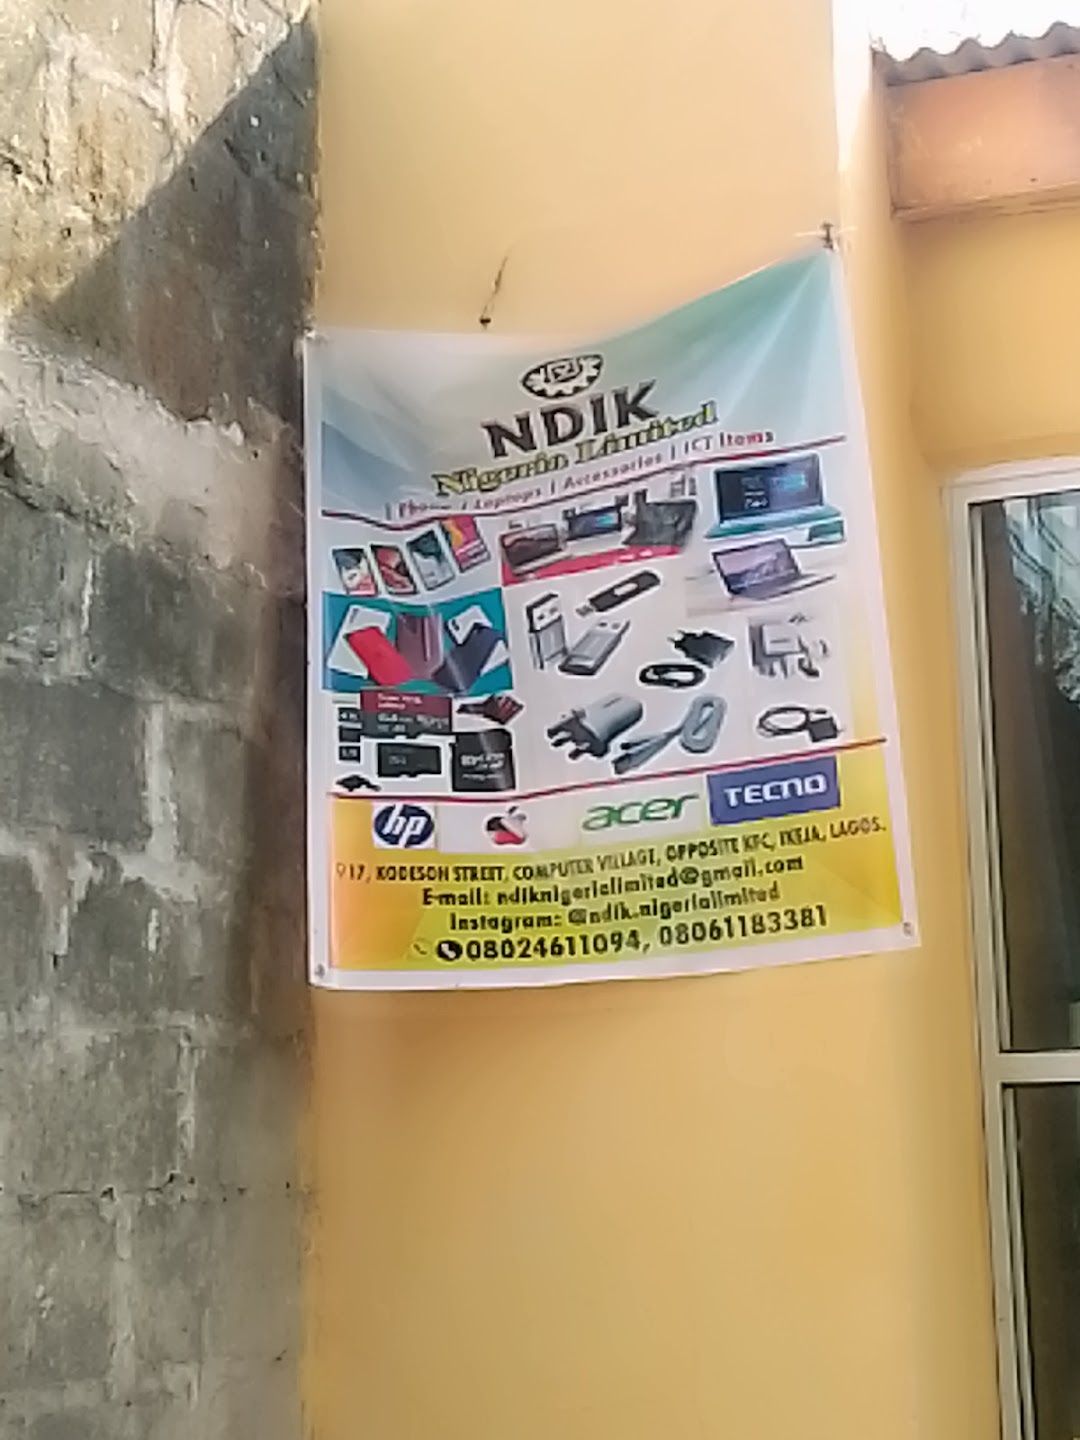 Ndik Nigeria Limited